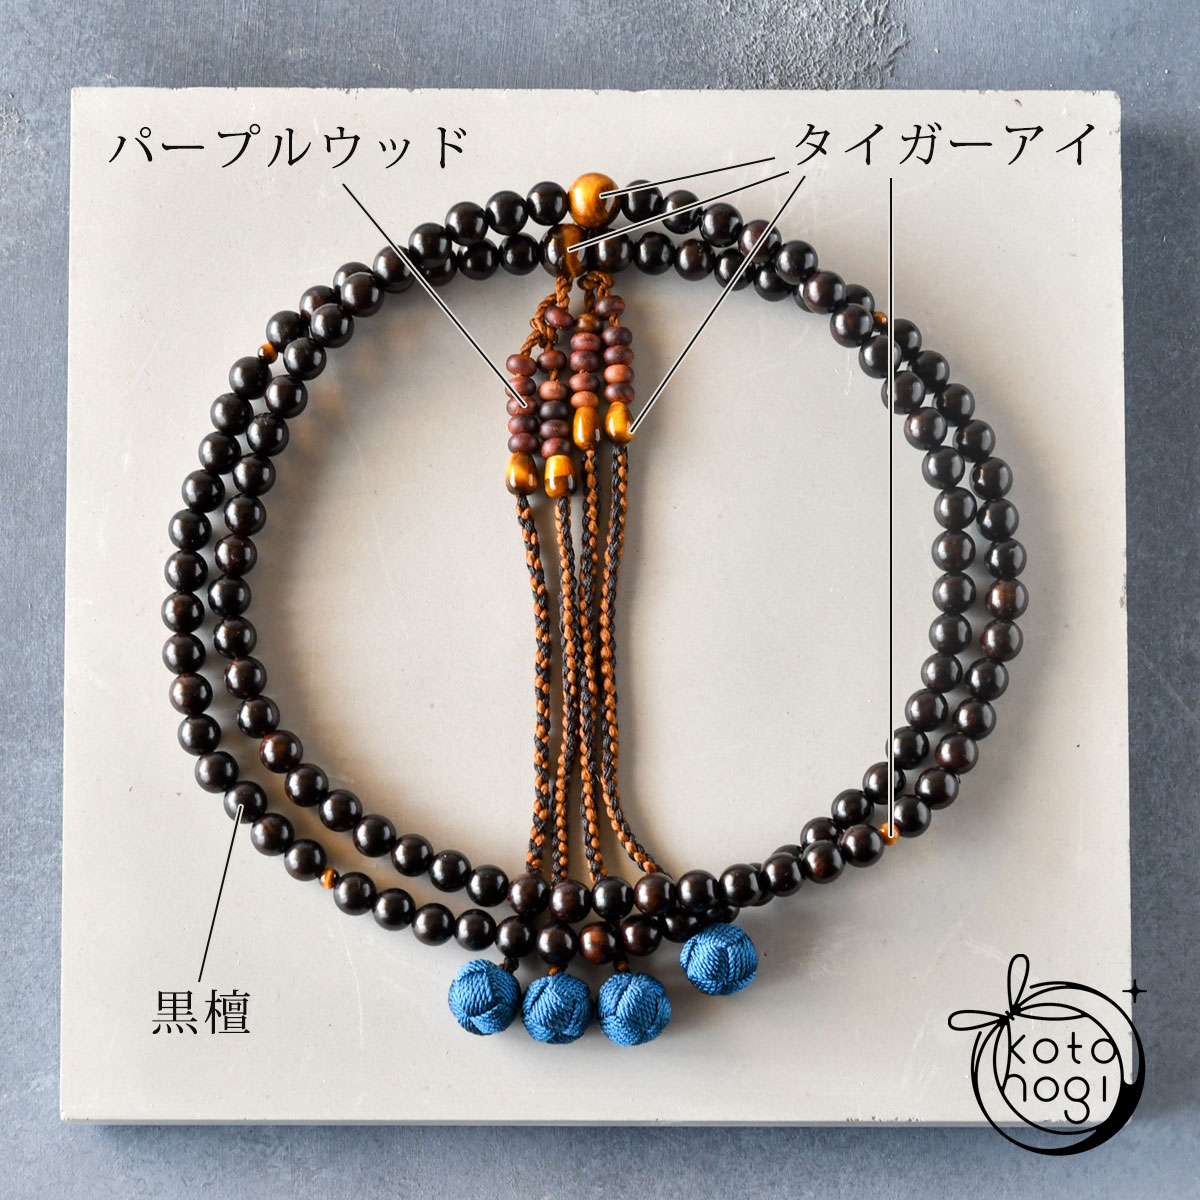 振分数珠（108珠）「魂ふり」 黒檀 パープルウッド タイガーアイ パワーストーン 本式数珠画像